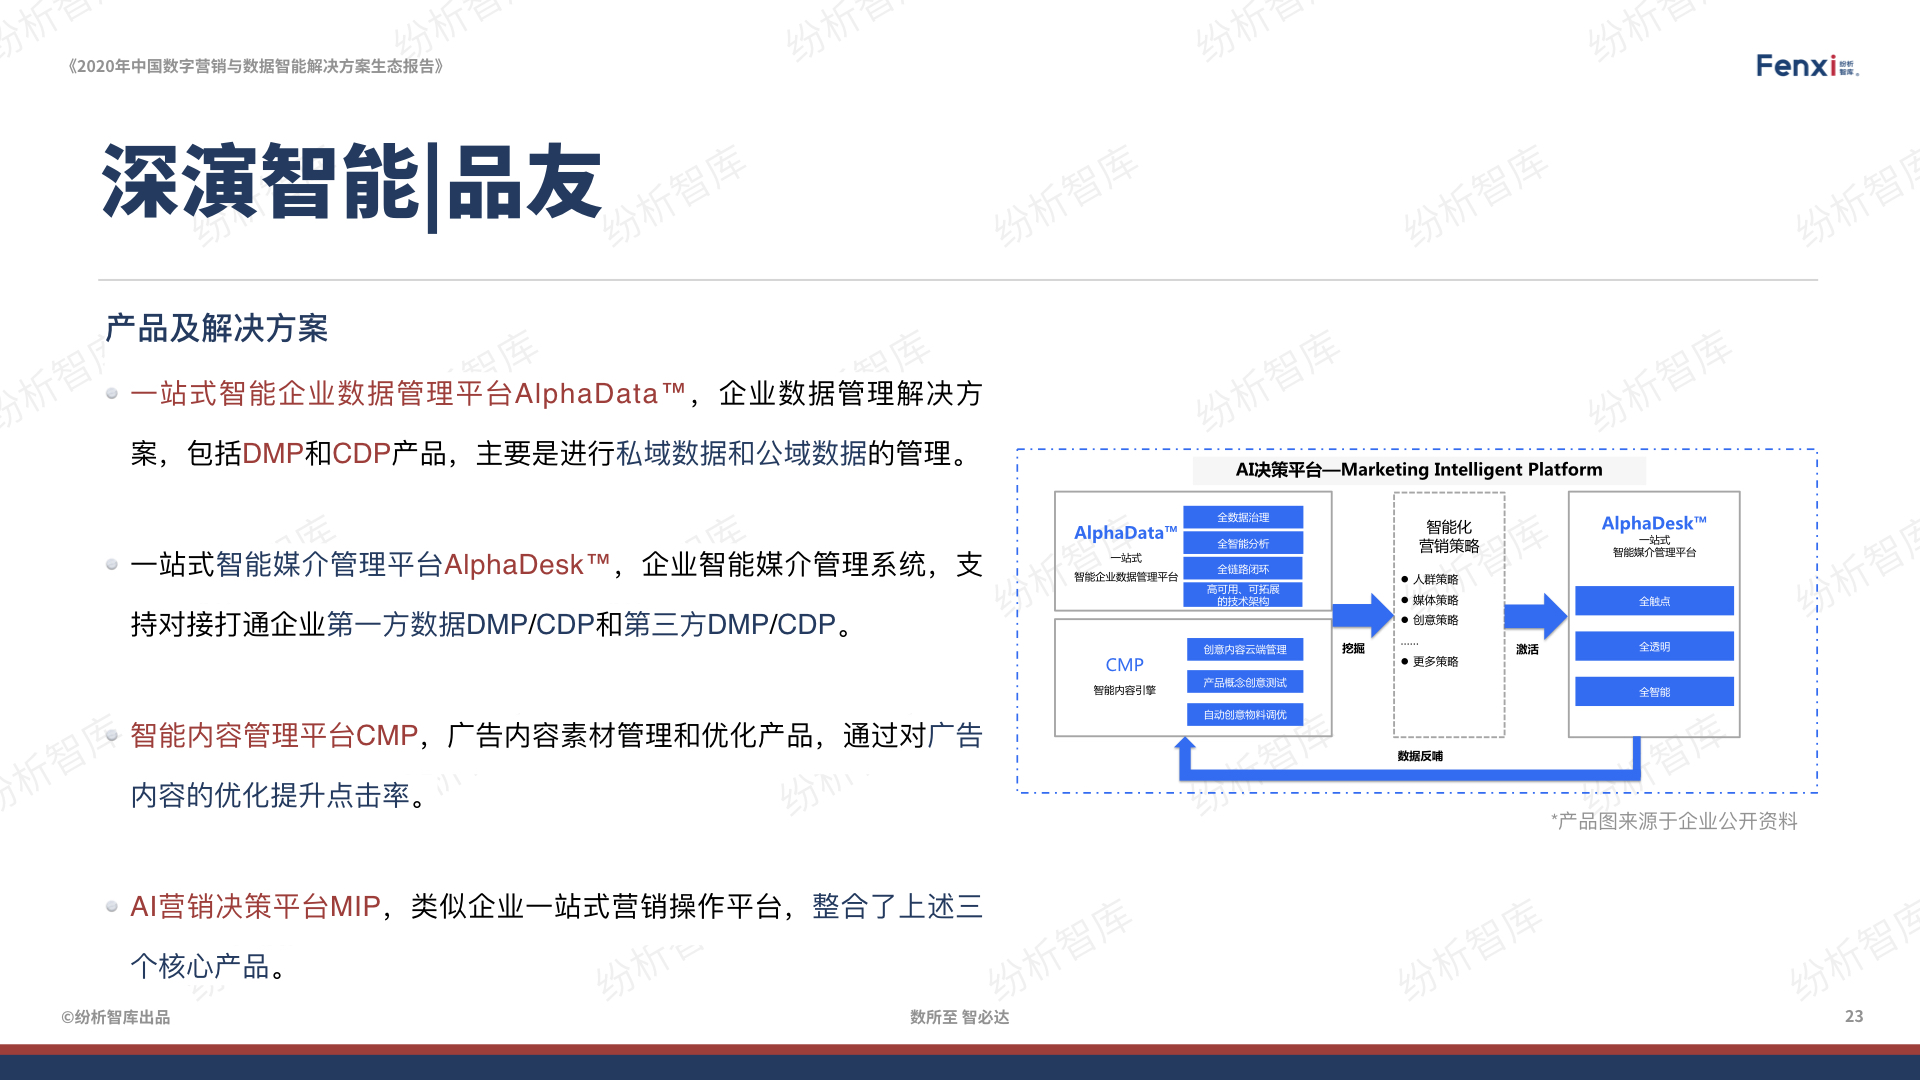 【V8】《2020年中国数字营销与数据智能解决方案生态图报告》0106.023.jpeg